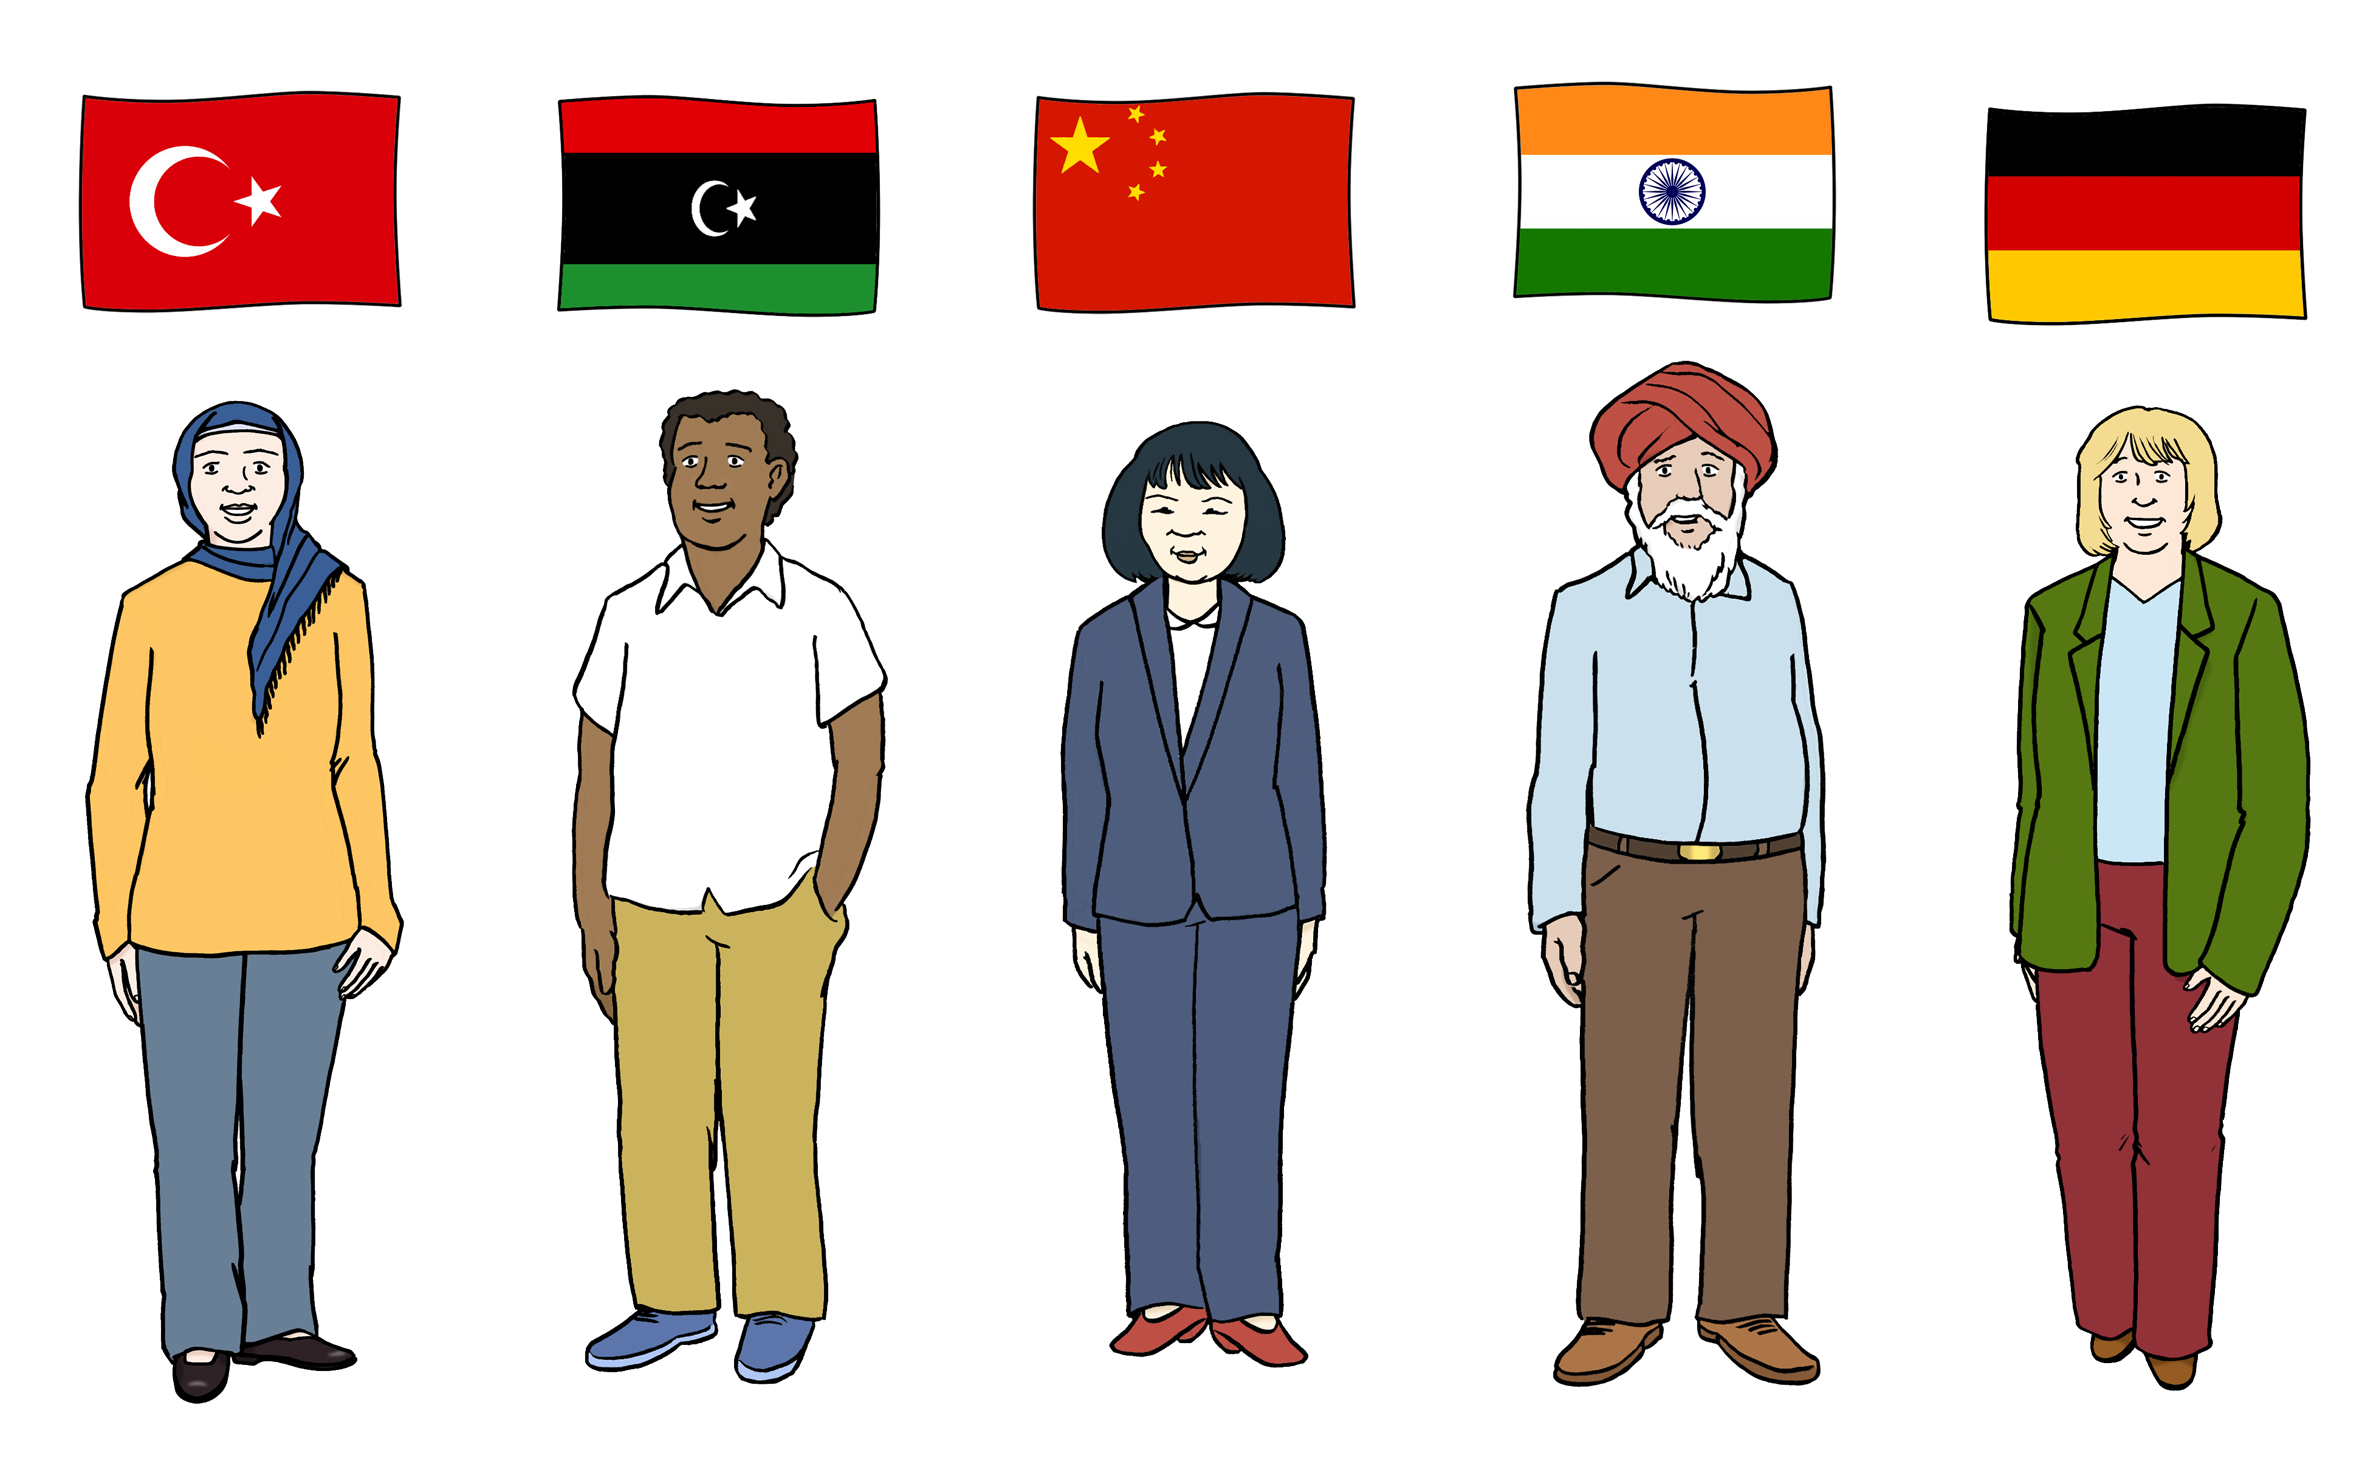 Leichte Sprache Bild: Menschen verschiedener Staatsangehörigkeiten nebeneinander, über ihren Köpfen fünf verschiedenen Landesflaggen